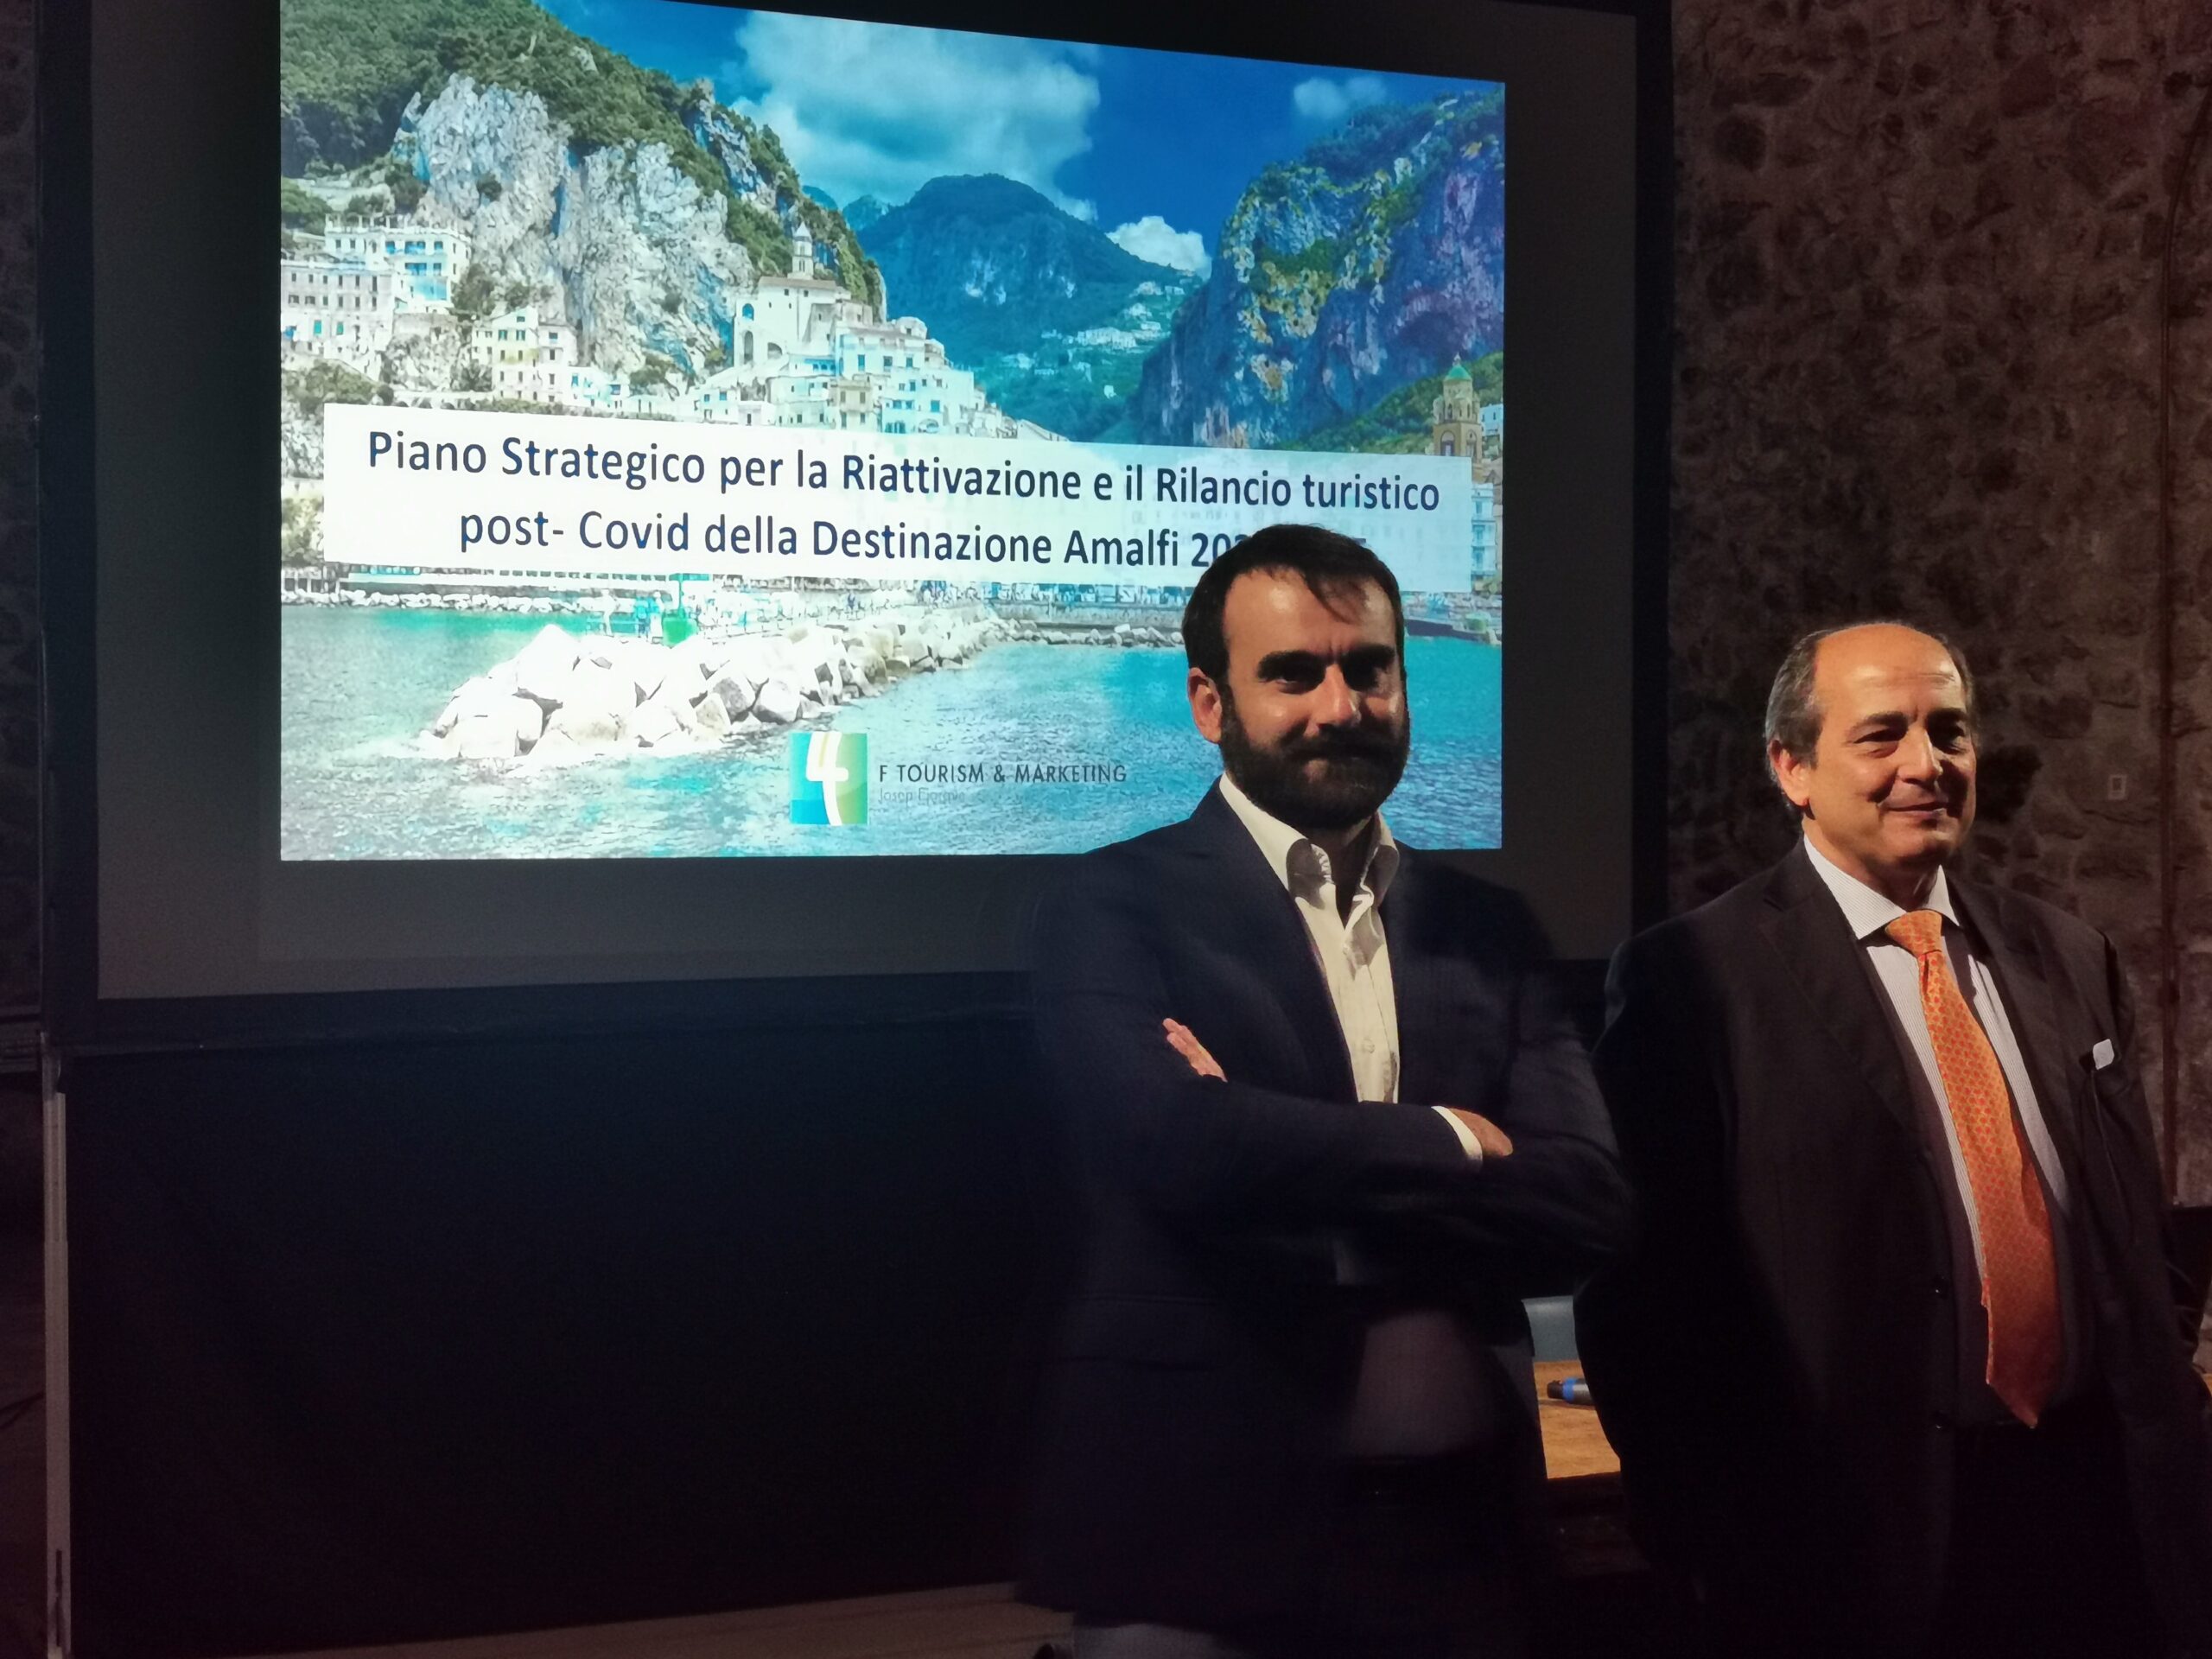 Amalfi: Piano Strategico Turismo, Comune ricerca 2 figure professionali esperte in marketing e comunicazione social